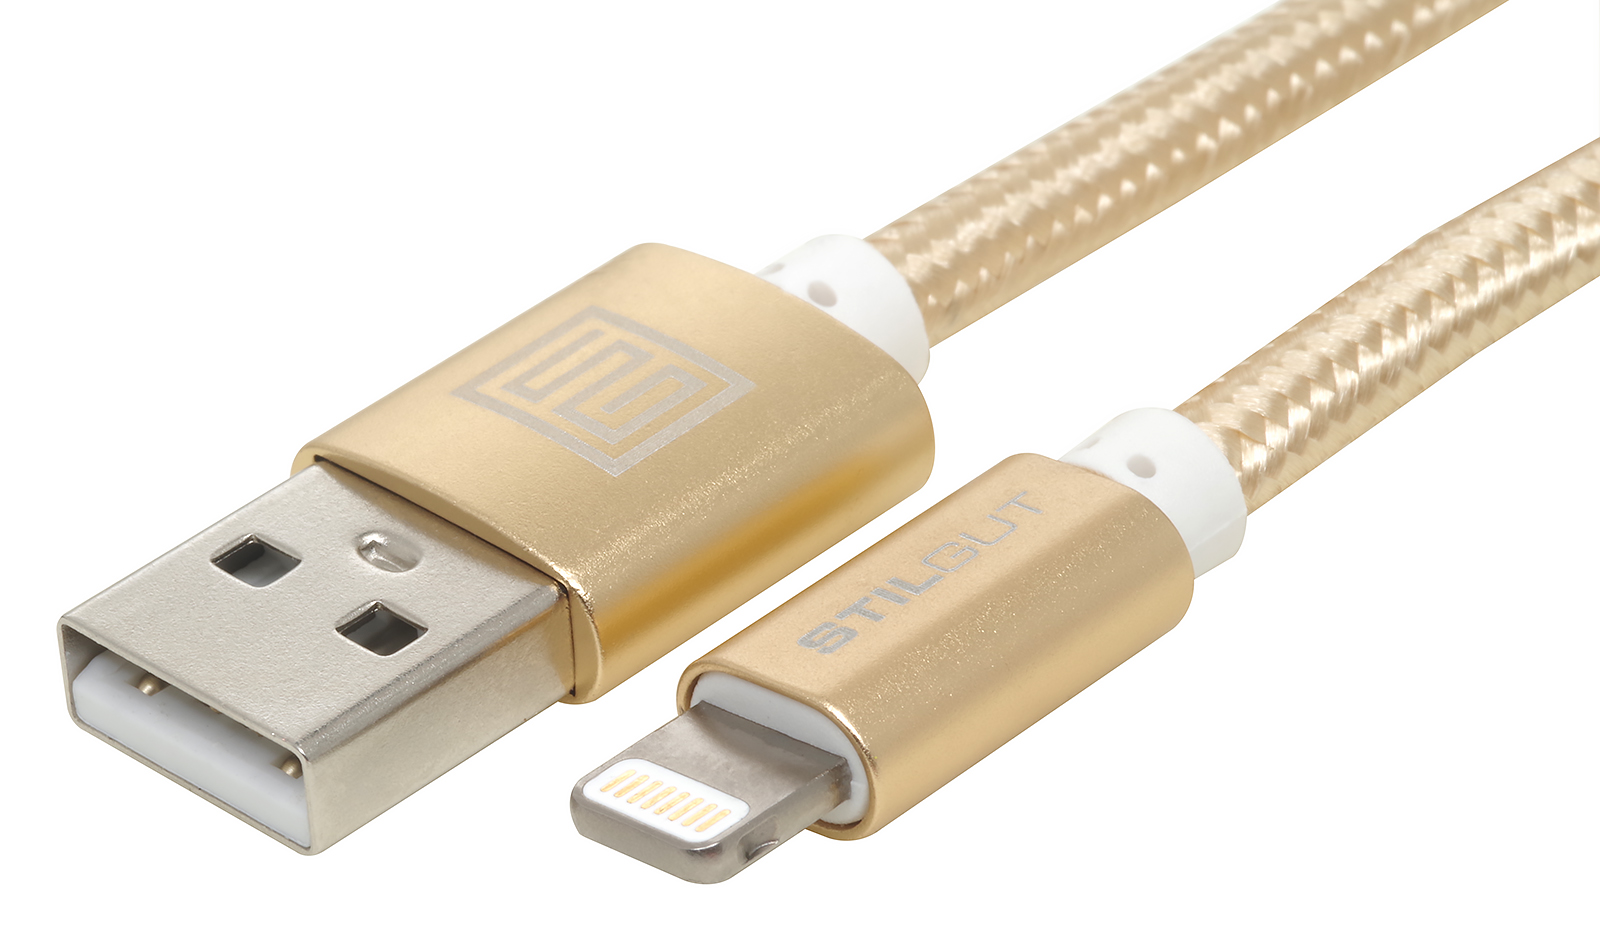 Usb c mfi. Кабель USB-C Lightning 1m (Premium реплика). Кабель USB Lightning 1m. Кабель Lightning/USB 9(1 М) copi с металлической оплеткой (в упаковке). MFI кабель Lightning.